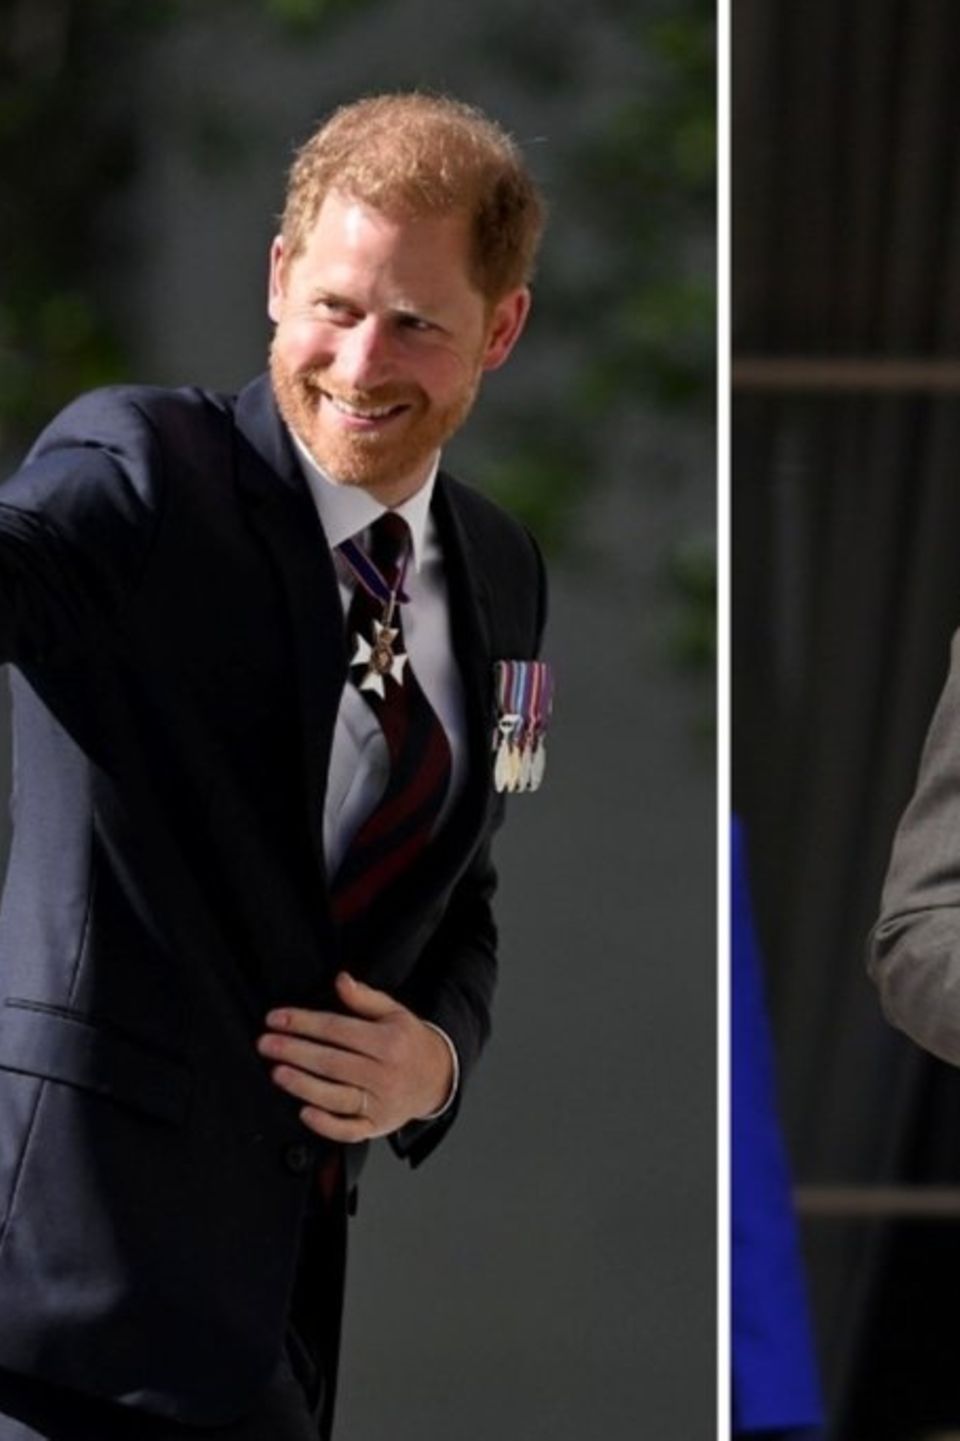 Prinz Harry zeigte sich strahlend vor der Kathedrale, König Charles empfing währenddessen Gäste im Buckingham Palast.